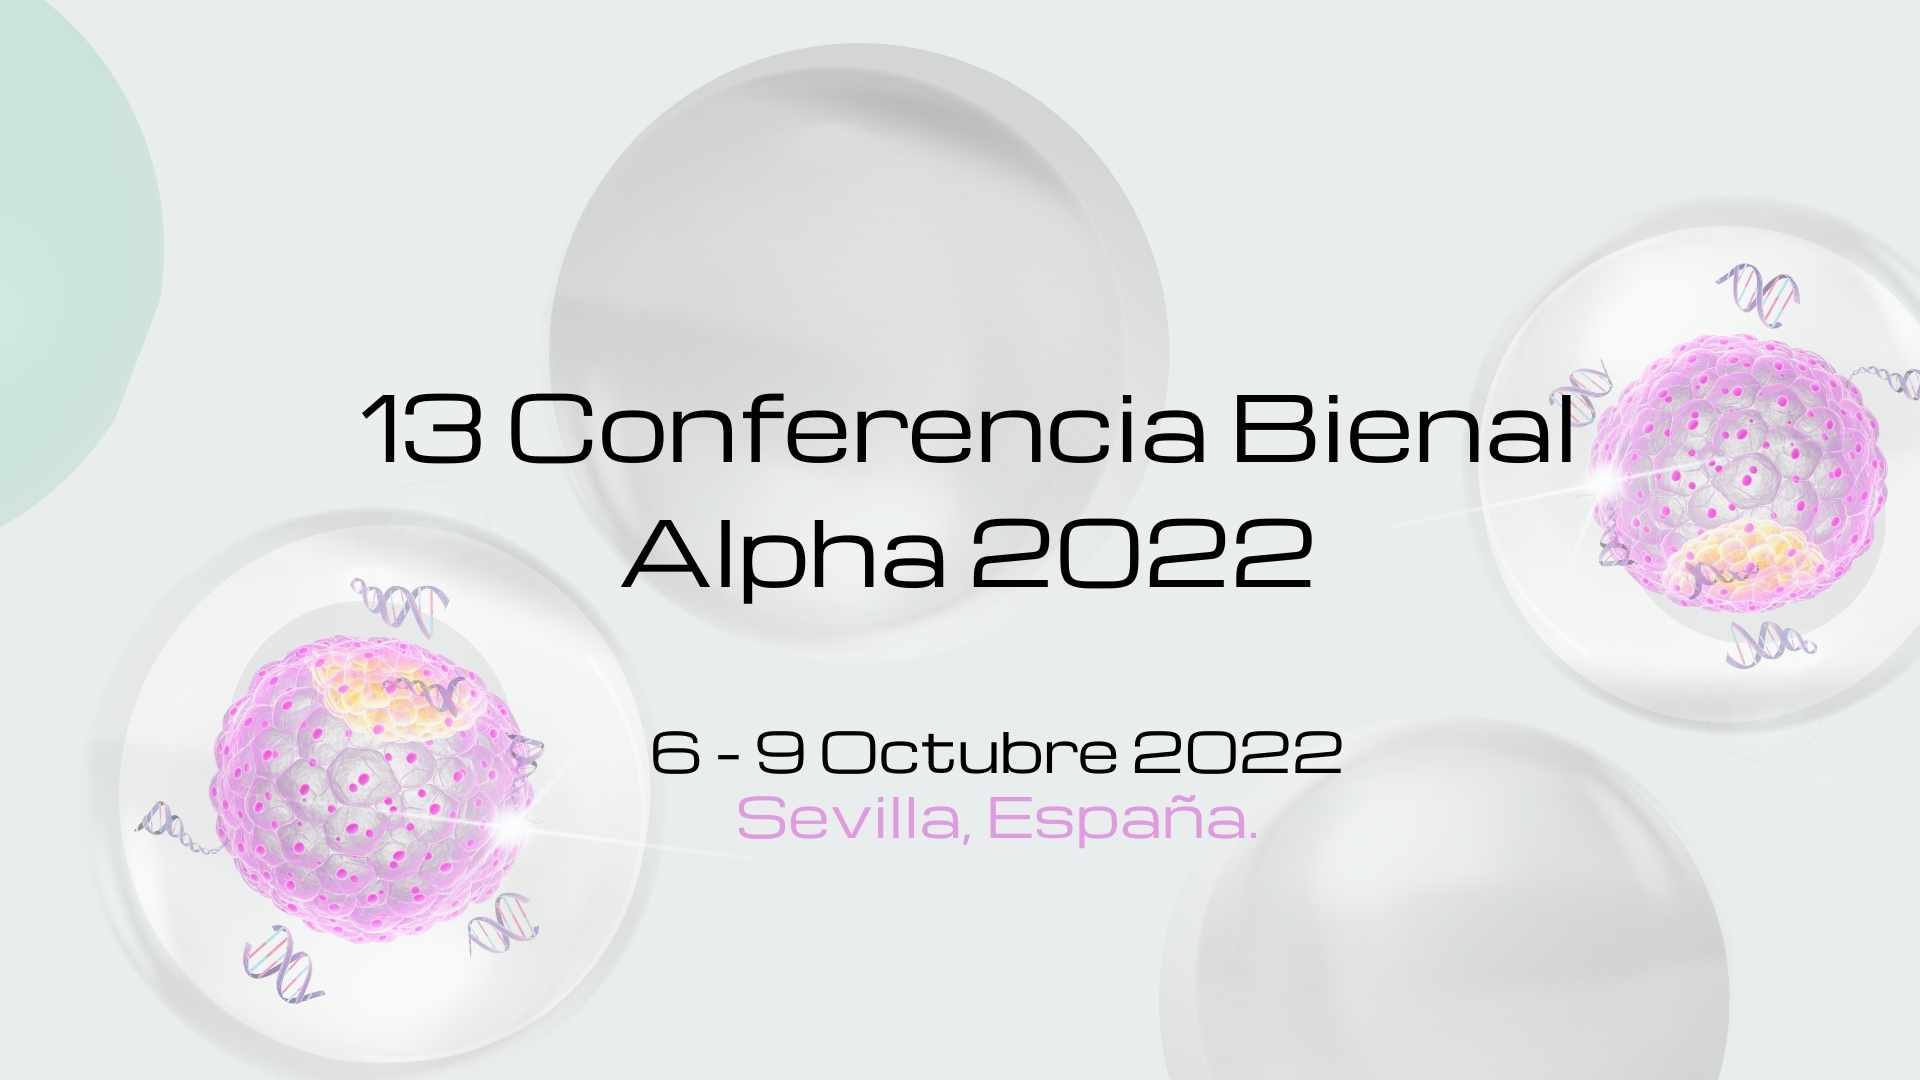 13 Conferencia Bienal Alpha 2022